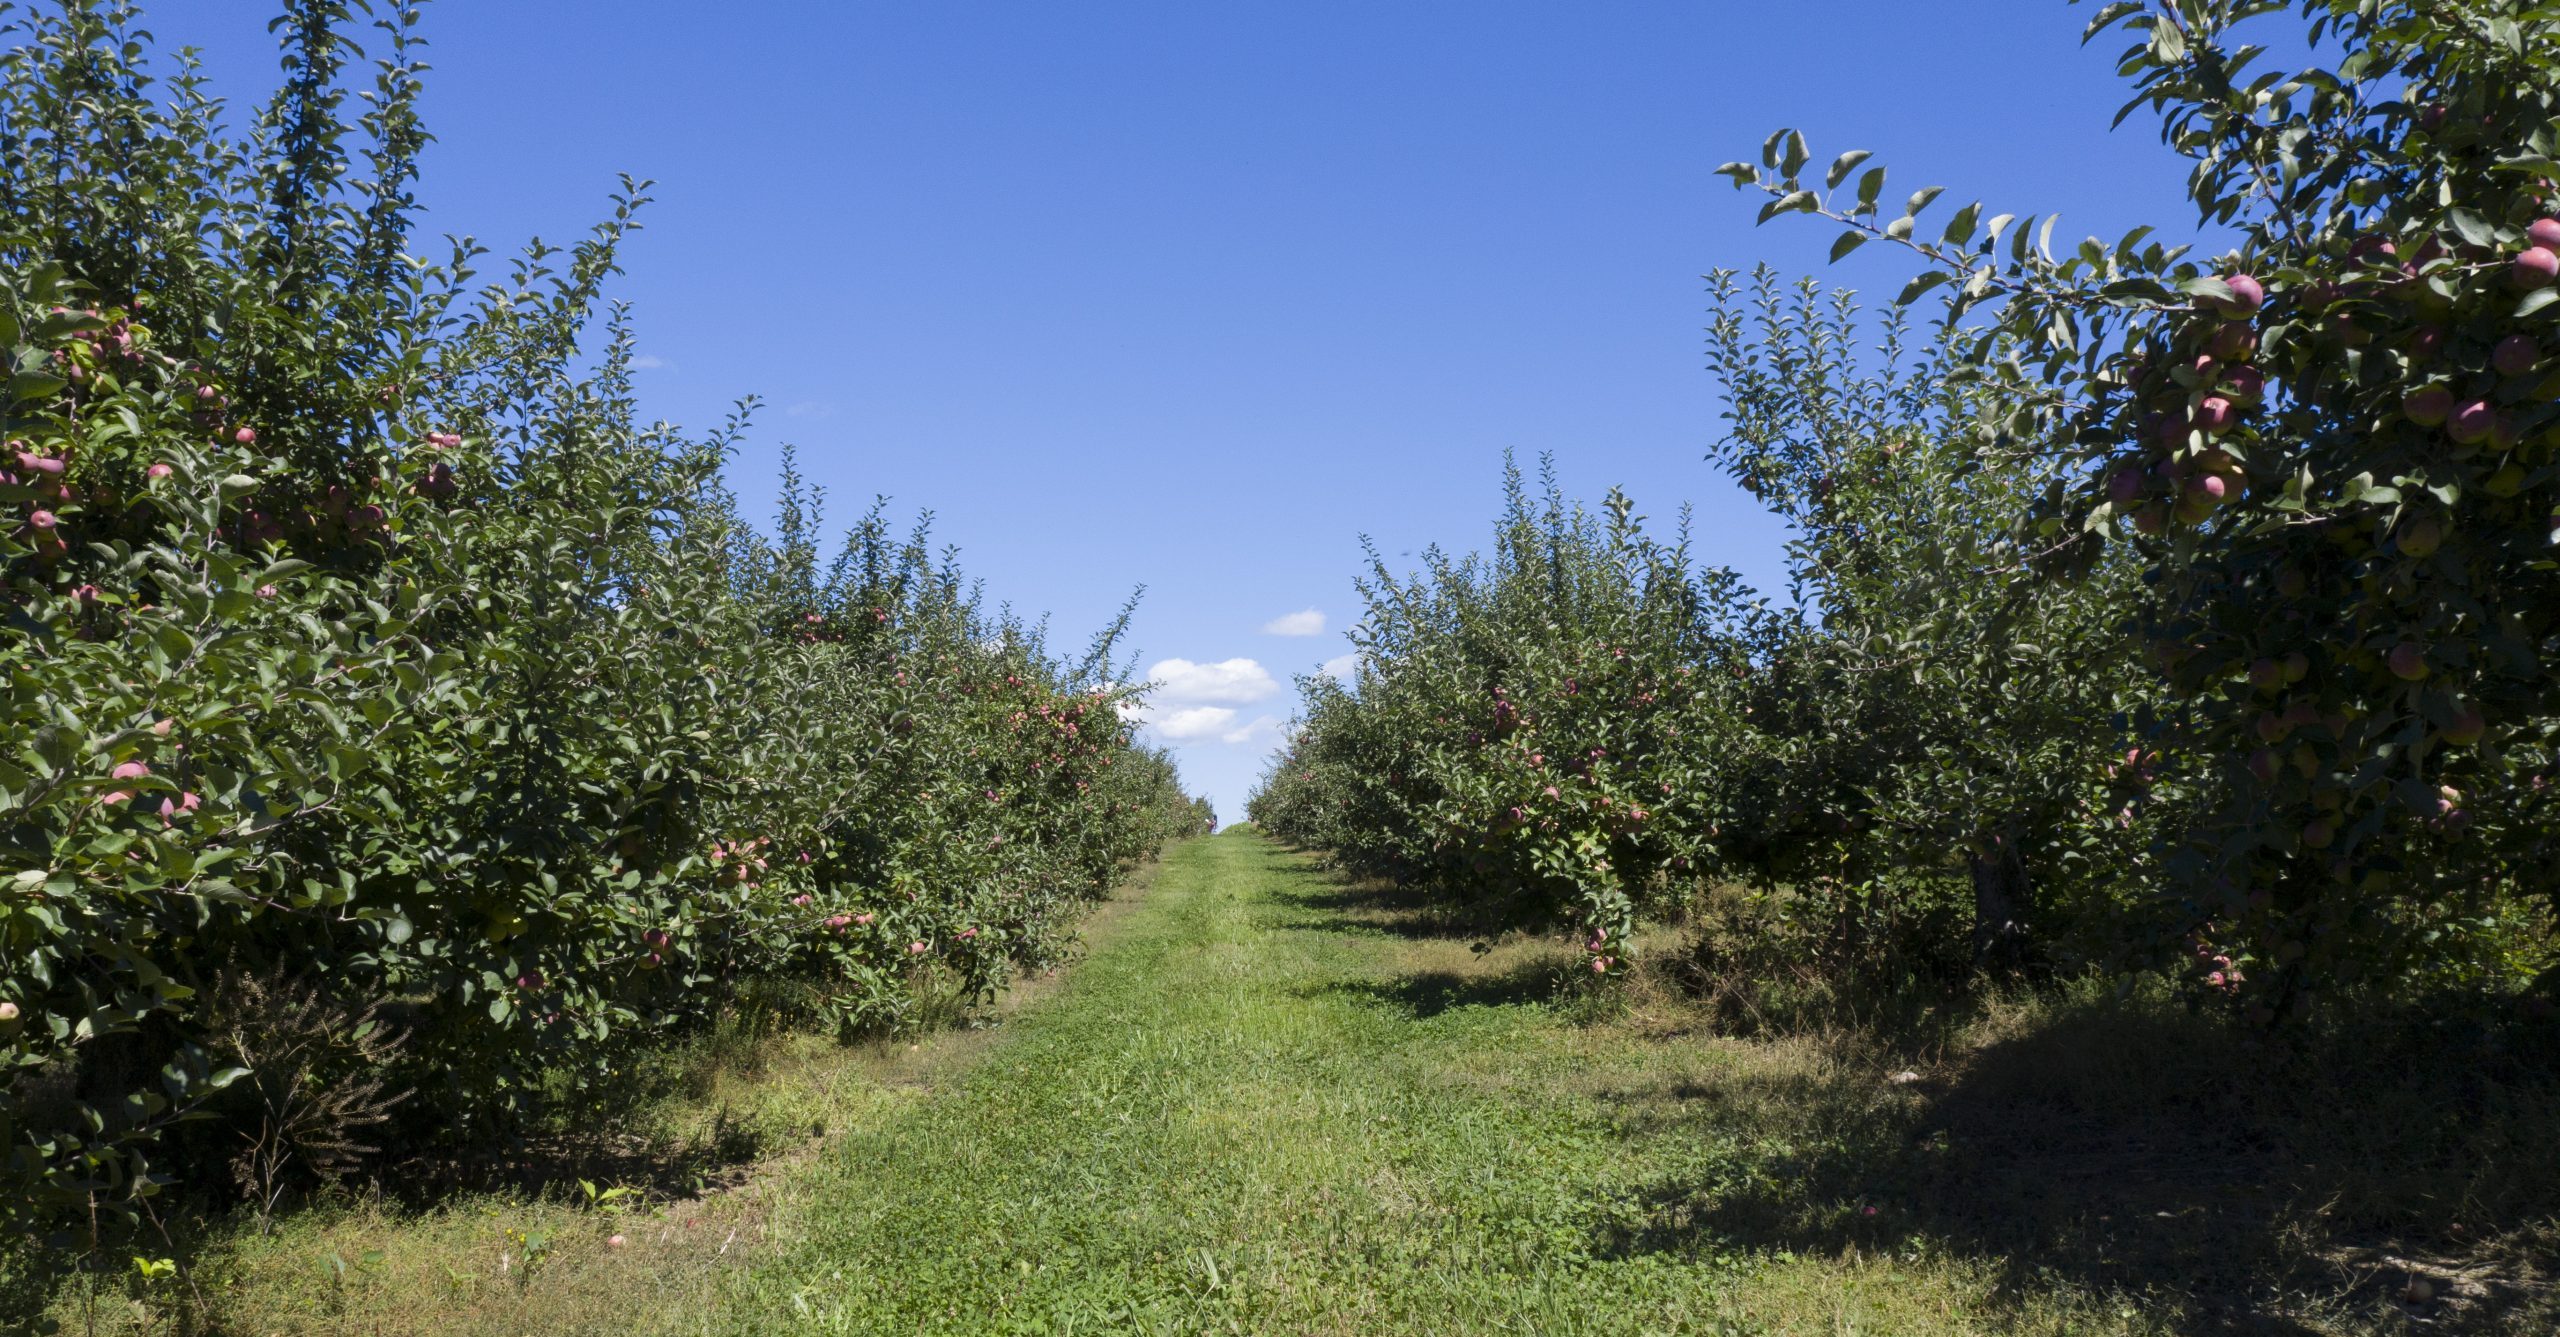 Apple-Ridge-Orchards01-scaled-e1616958438280